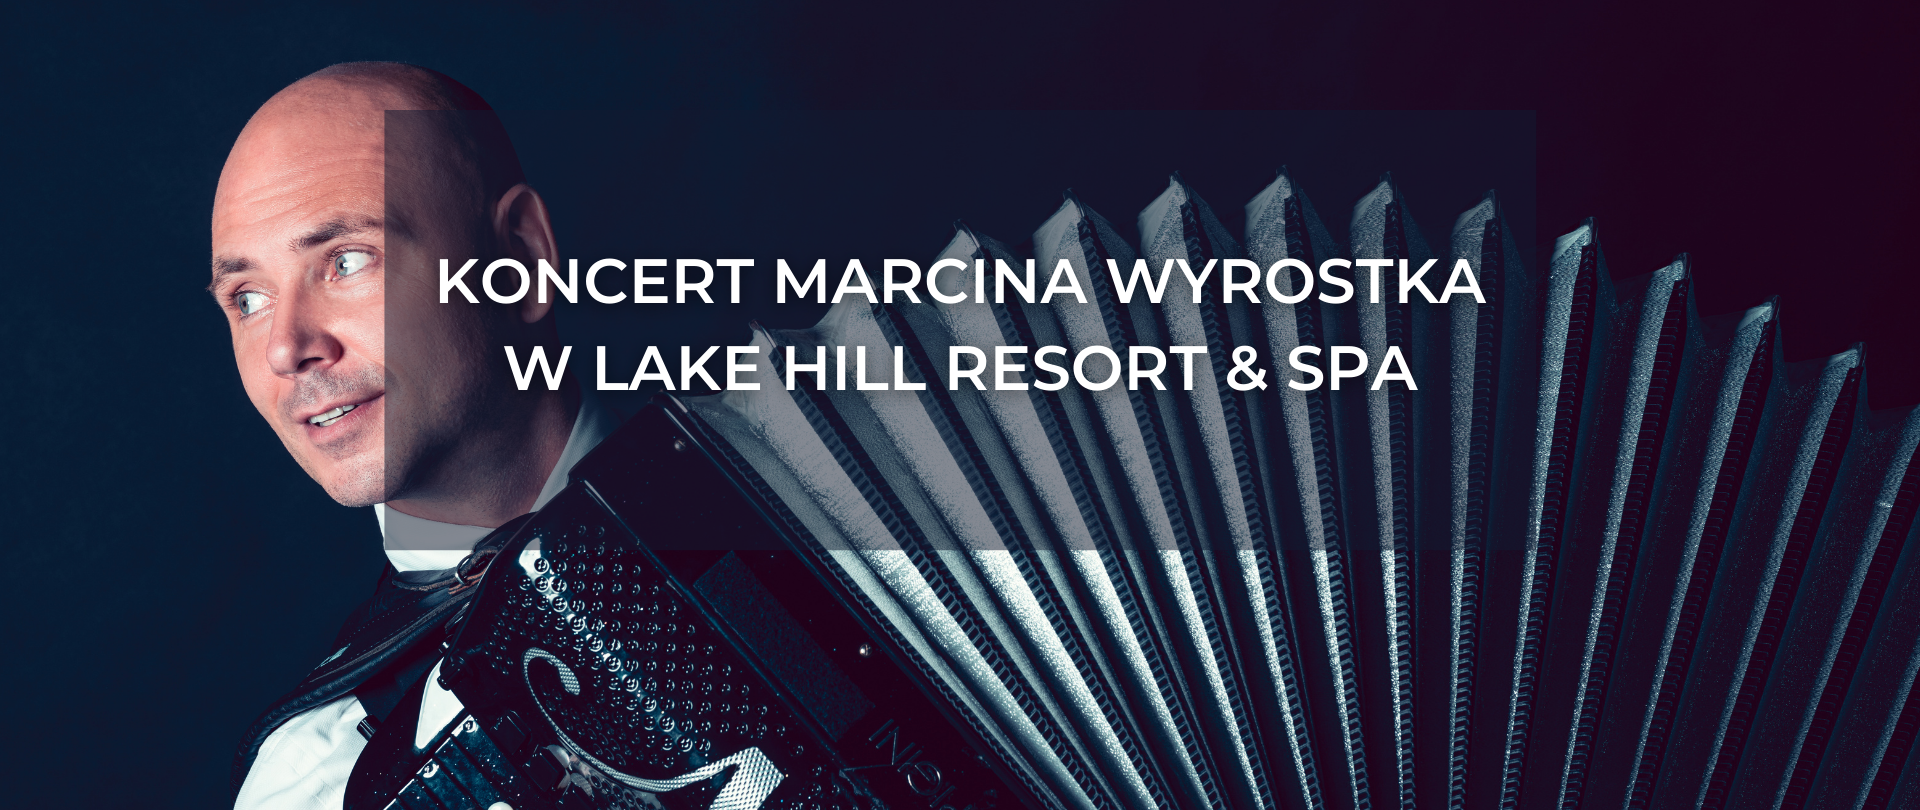 Marcin Wyrostek's concert | End of holidays at Lake Hill Resort & SPA